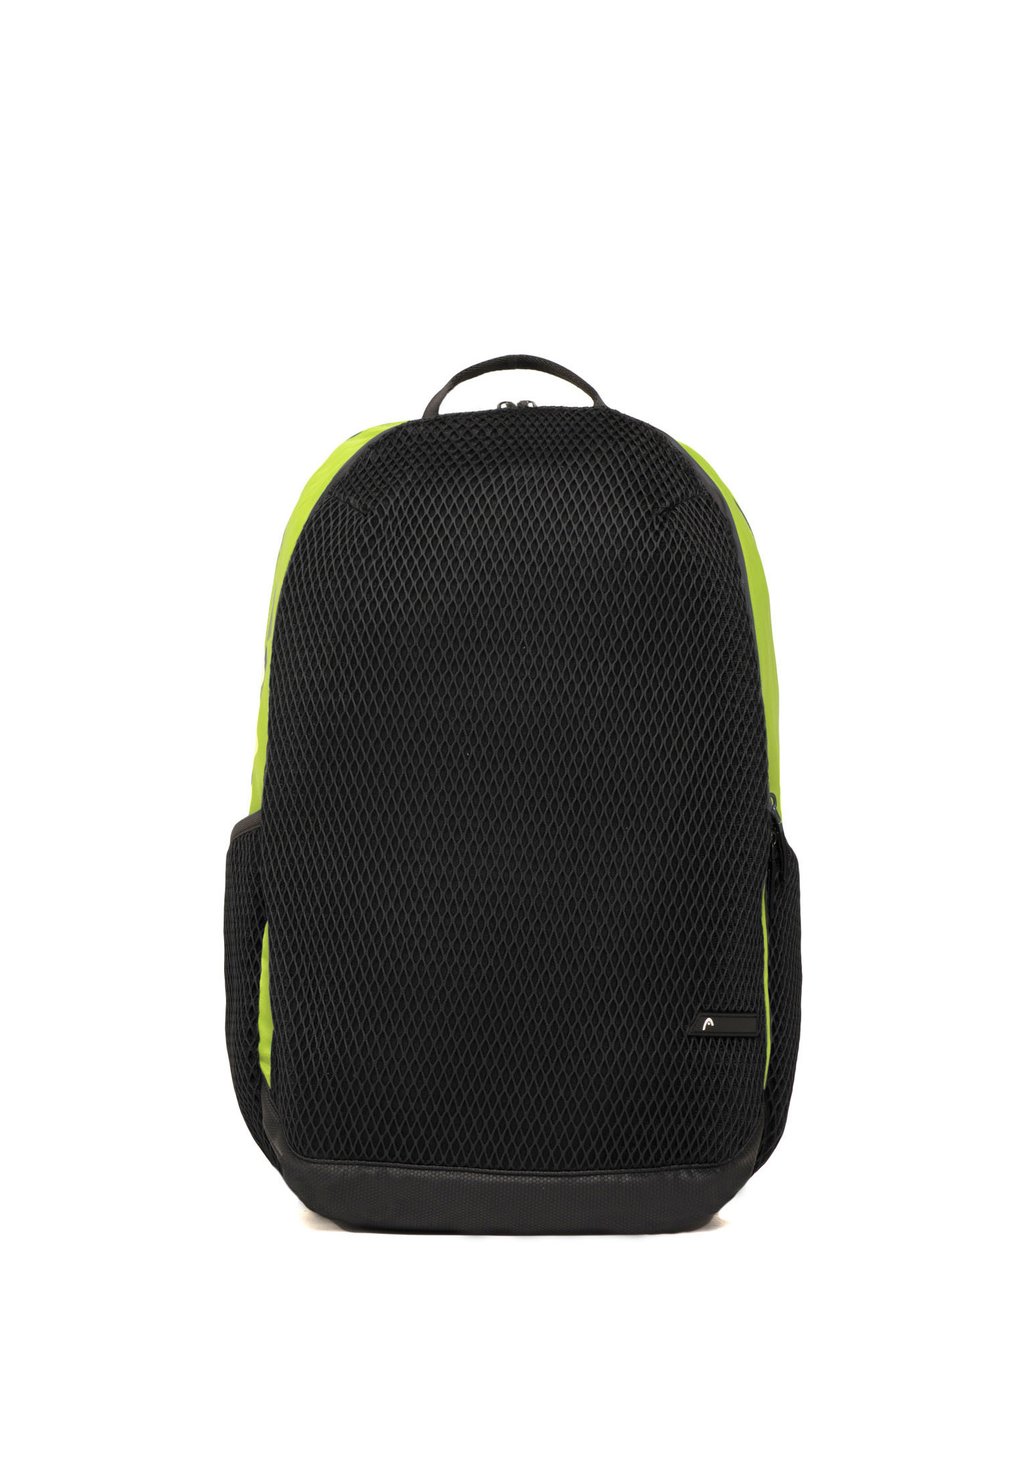 Рюкзак для путешествий Head NET, салатовый/черный фото